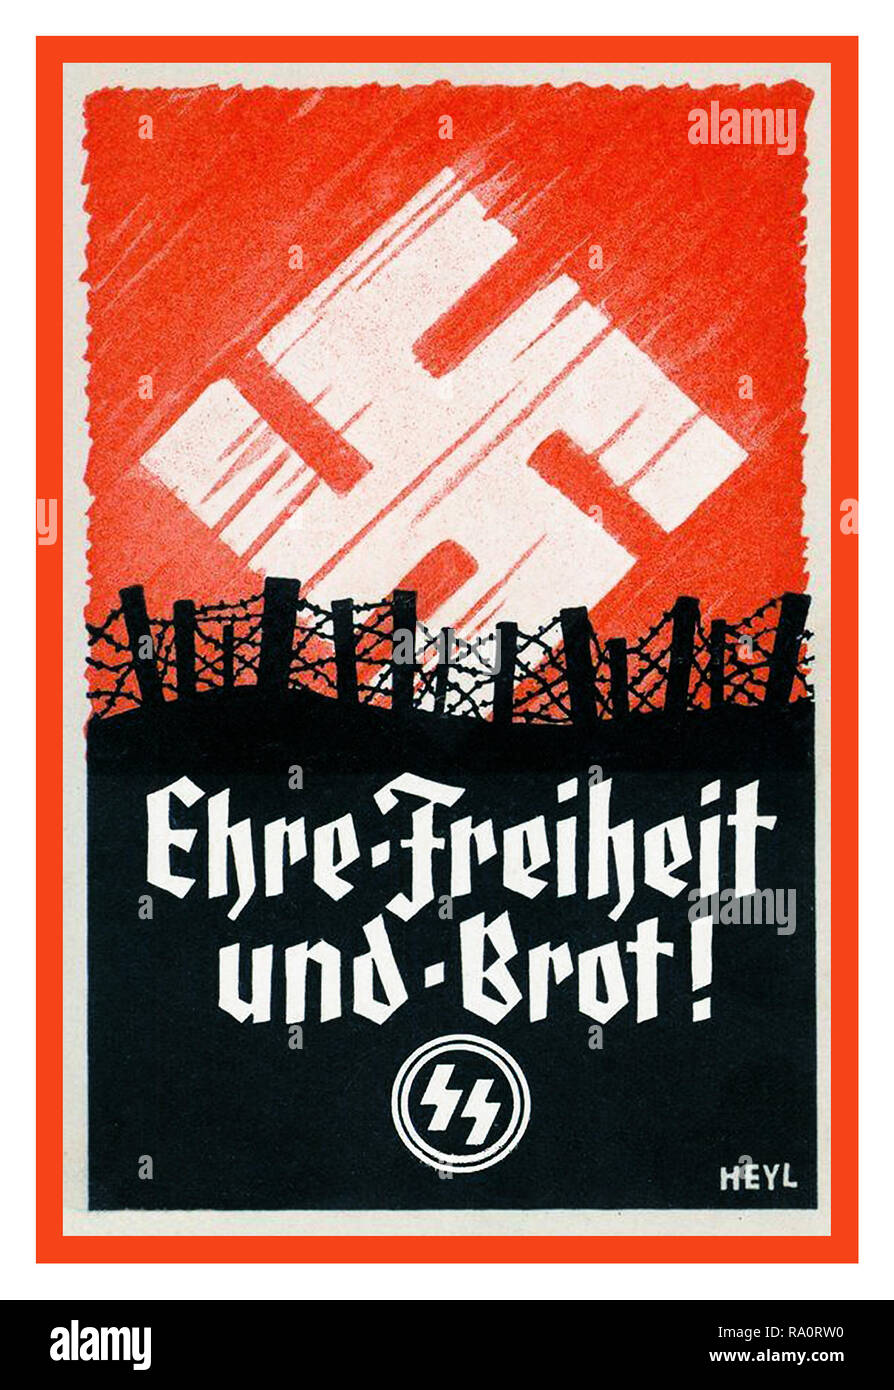 Vintage WW2 Allemagne nazie SS propagande de l'armée affiche de recrutement pour le Waffen SS 'liberté d'honneur et de pain' EHRE, FREIHEIT, und, BROT ! Dans une situation de champ de bataille avec Nazi Swastika comme un lever de soleil emblématique Banque D'Images